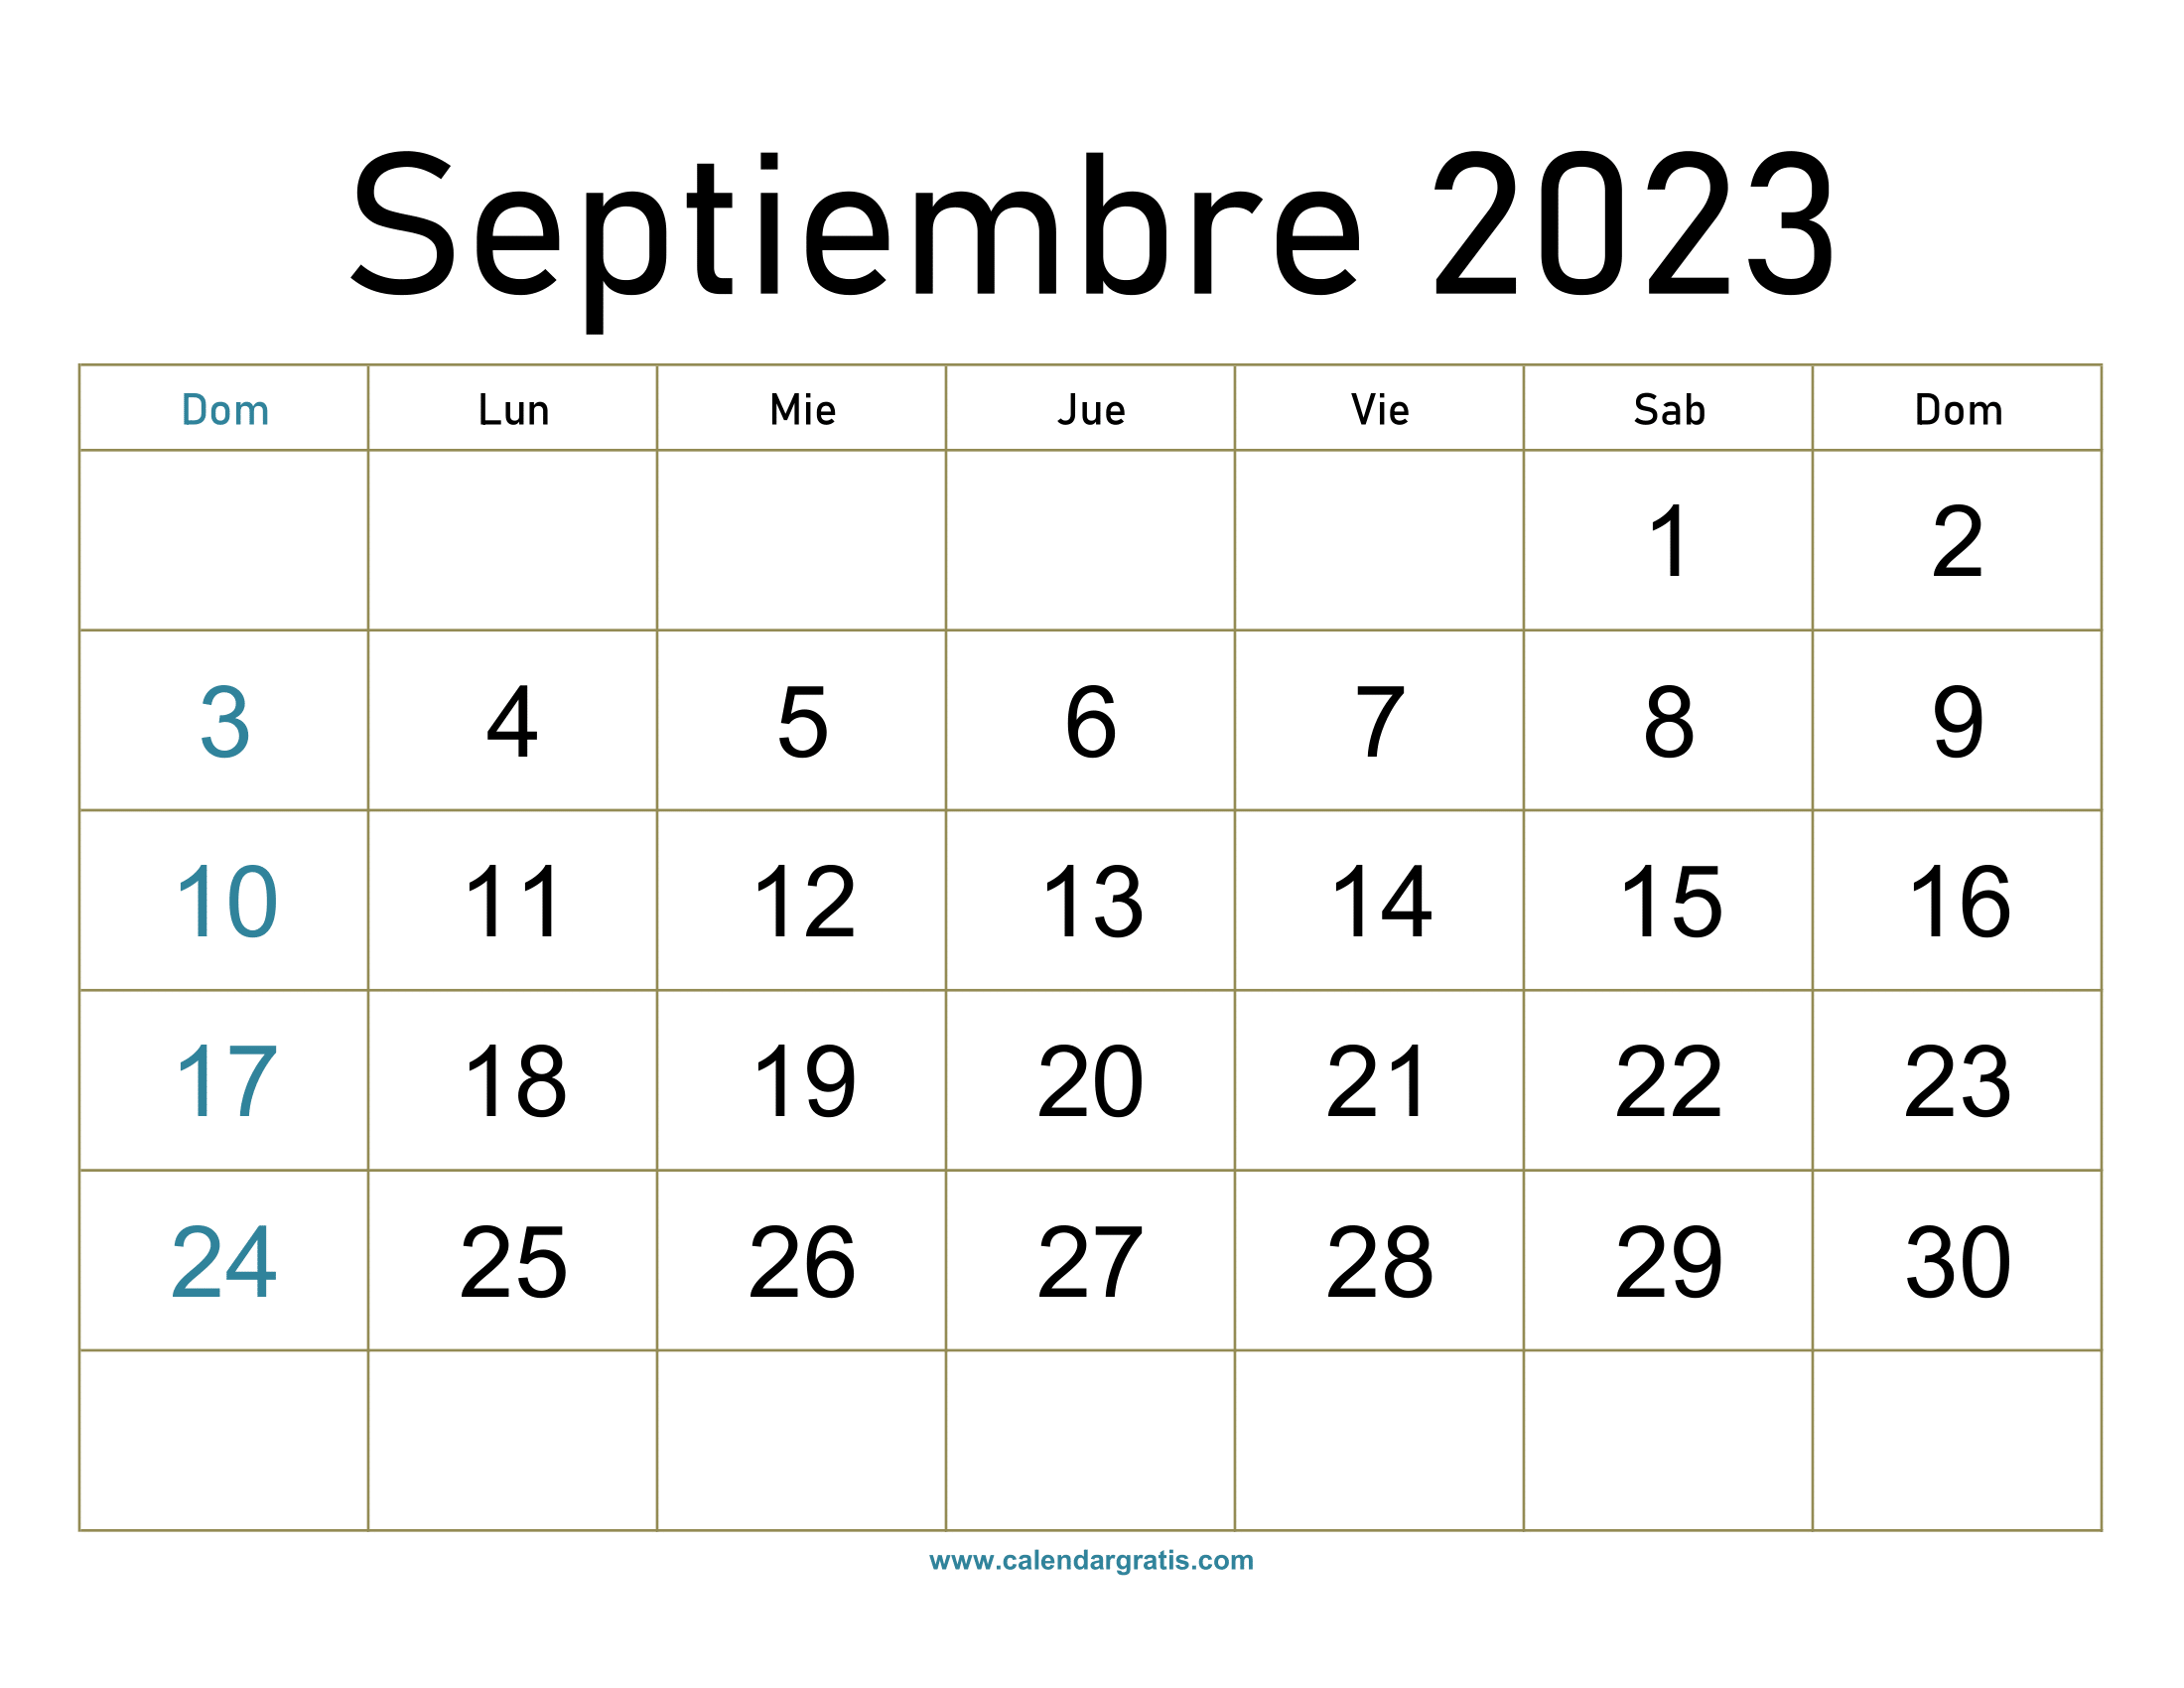 Planificador mensual Calendario septiembre 2023 para imprimir  descargar en formato de imagen.